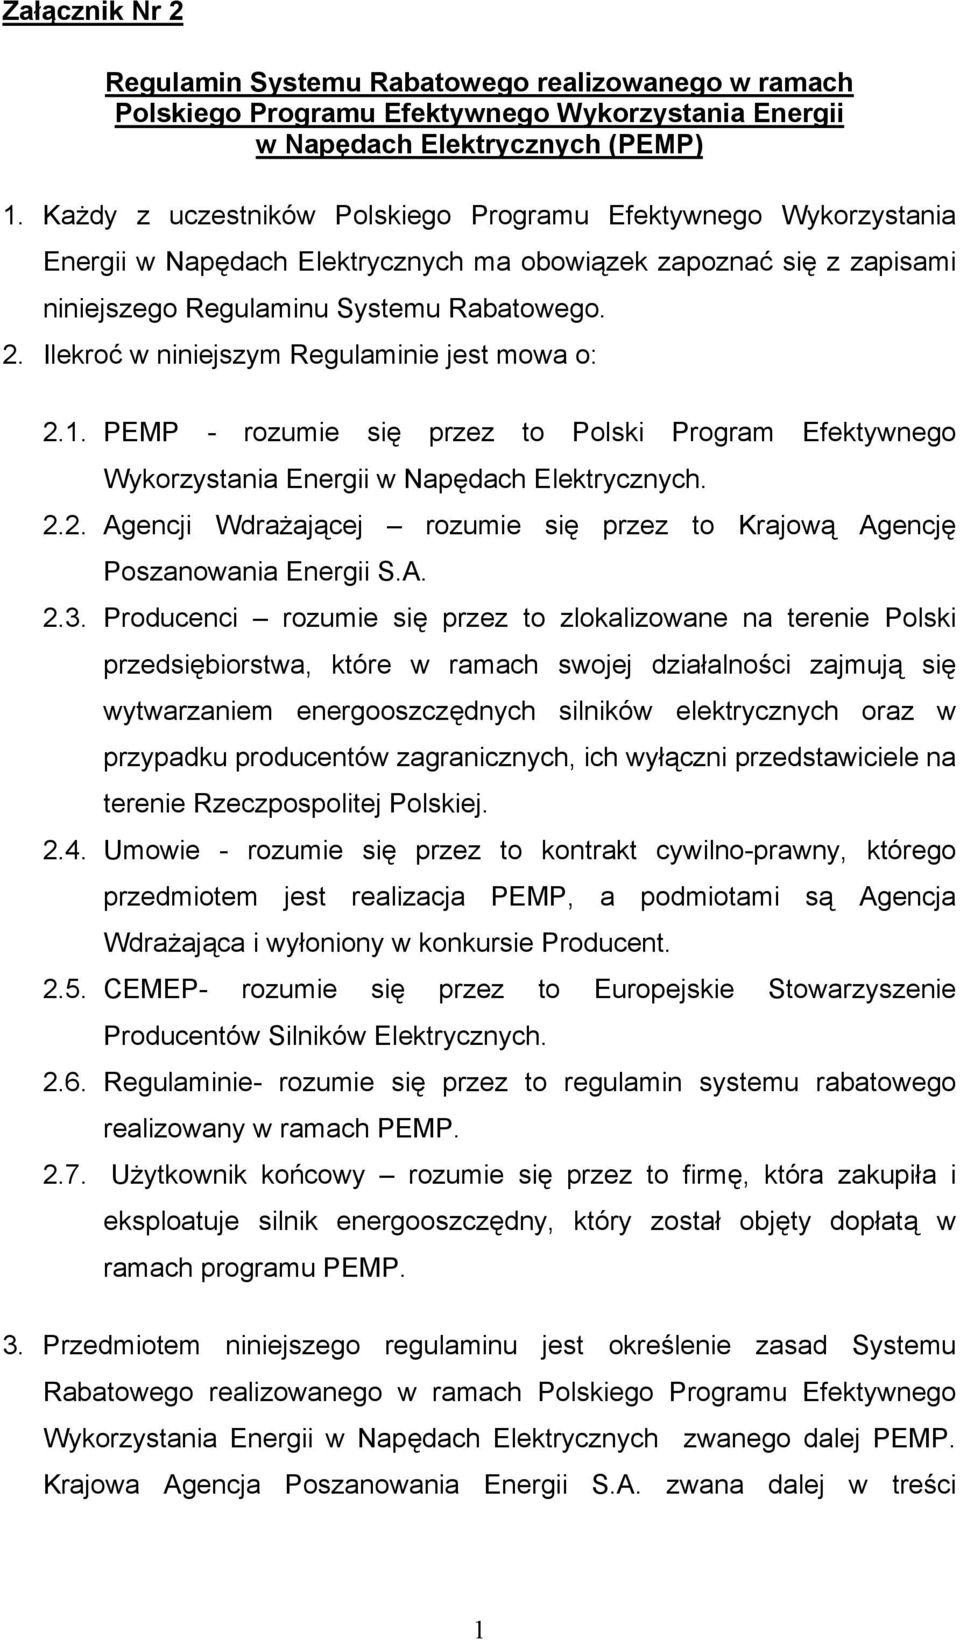 Ilekroć w niniejszym Regulaminie jest mowa o: 2.1. PEMP - rozumie się przez to Polski Program Efektywnego Wykorzystania Energii w Napędach Elektrycznych. 2.2. Agencji Wdrażającej rozumie się przez to Krajową Agencję Poszanowania Energii S.